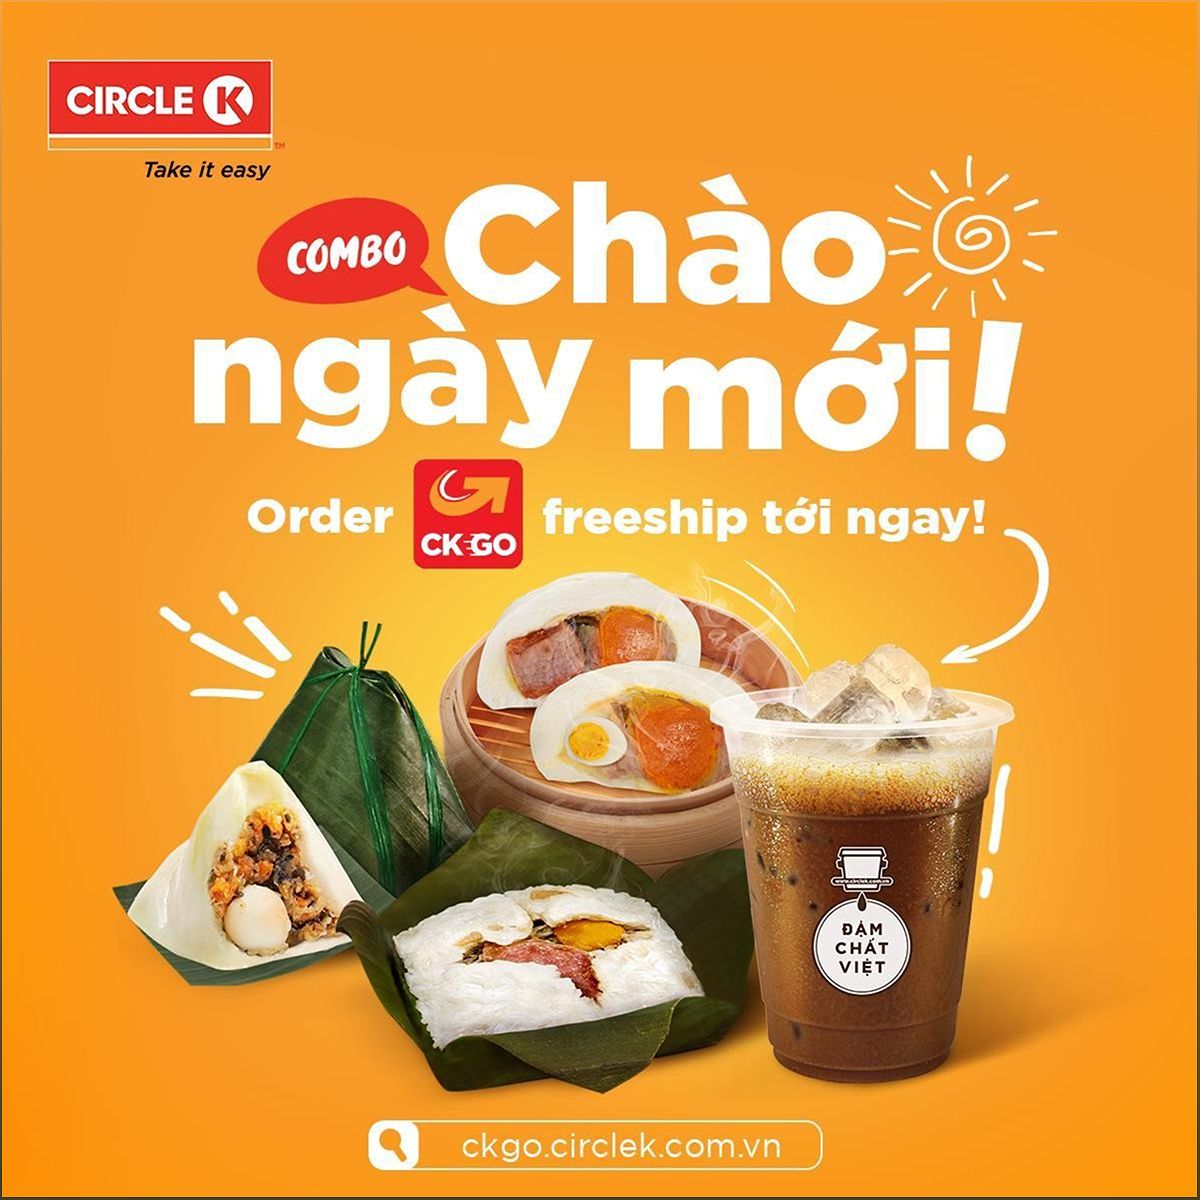 Circle K - Chuỗi cửa hàng tiện lợi hàng đầu tại Việt Nam - -2138365132